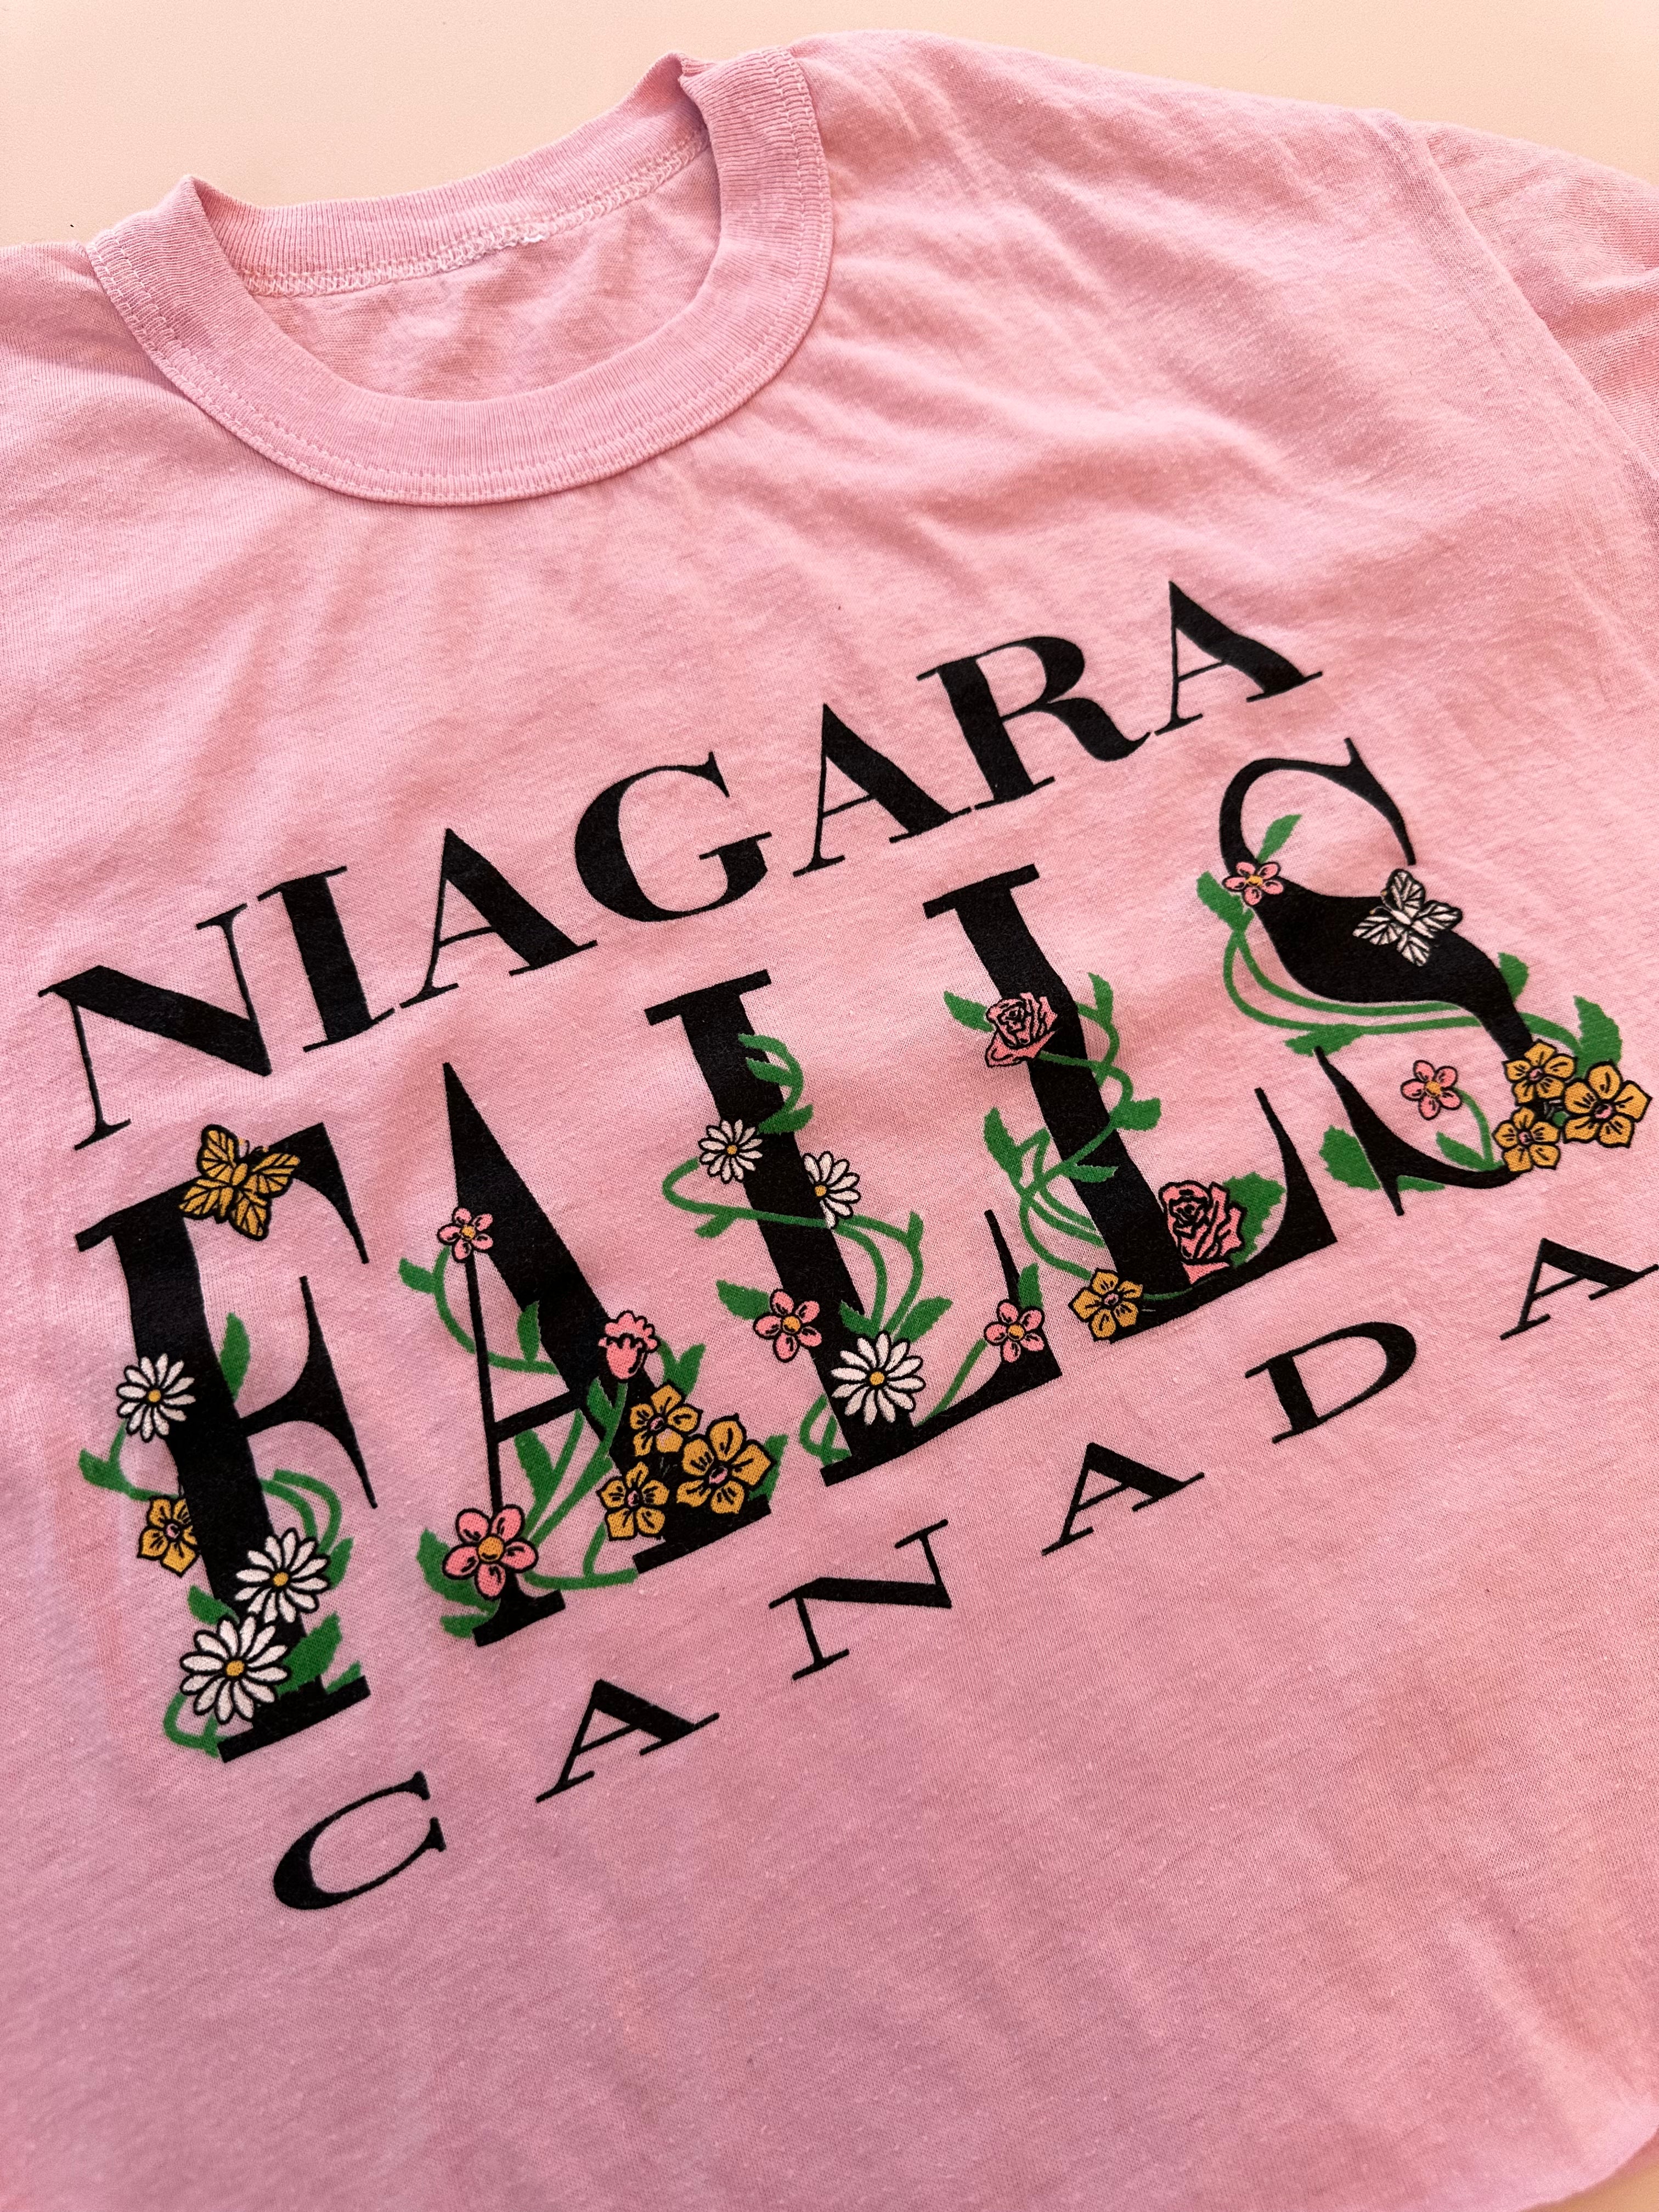 Vintage Niagara Falls tee